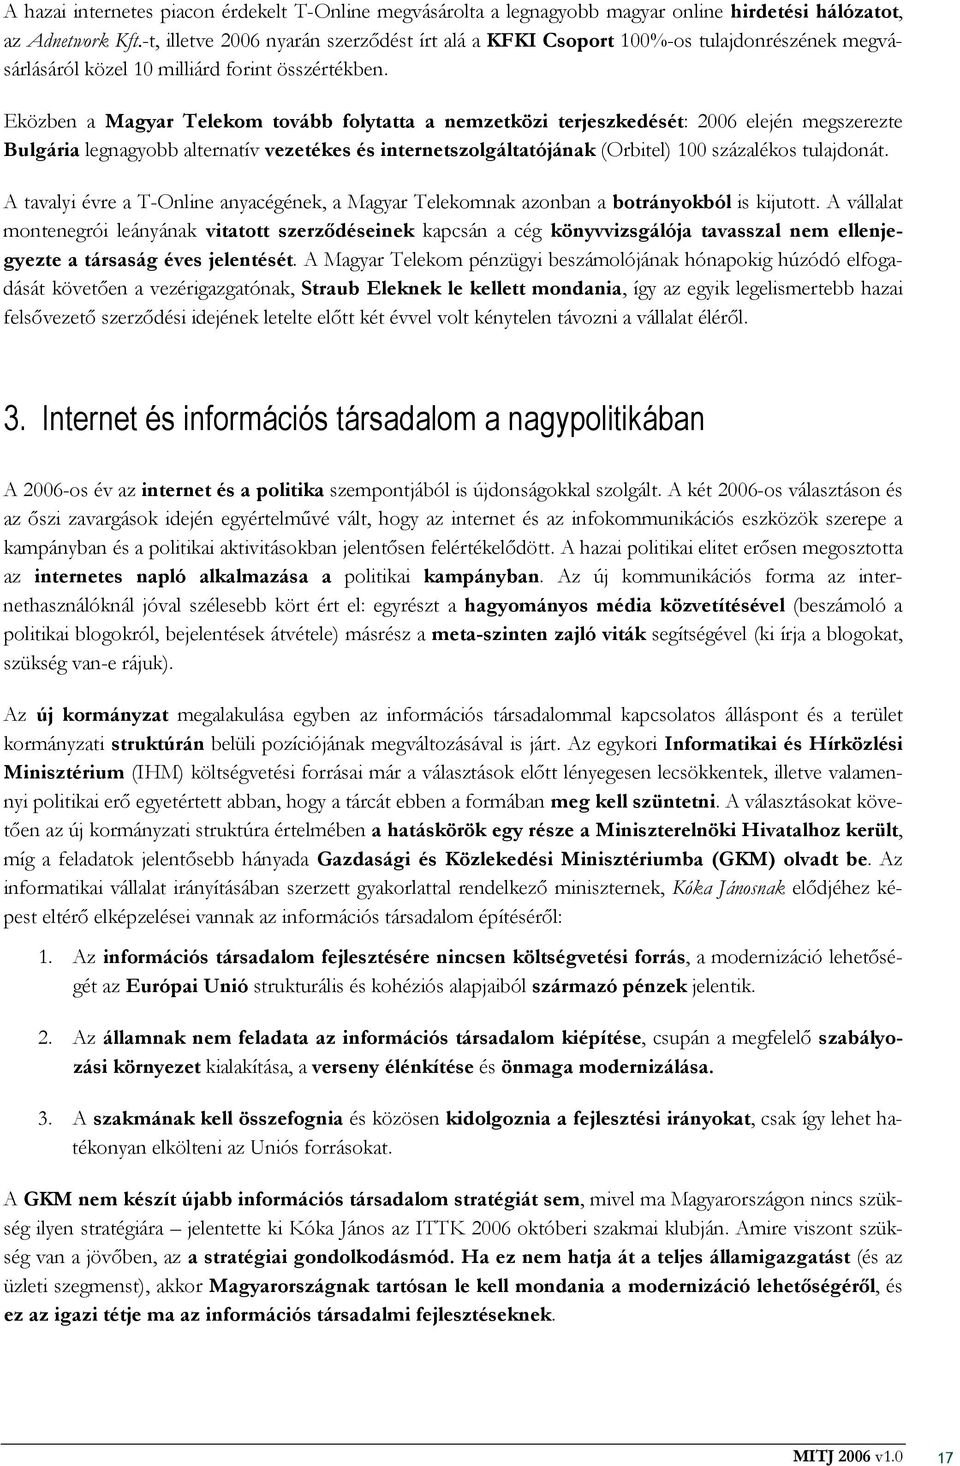 Eközben a Magyar Telekom tovább folytatta a nemzetközi terjeszkedését: 2006 elején megszerezte Bulgária legnagyobb alternatív vezetékes és internetszolgáltatójának (Orbitel) 100 százalékos tulajdonát.